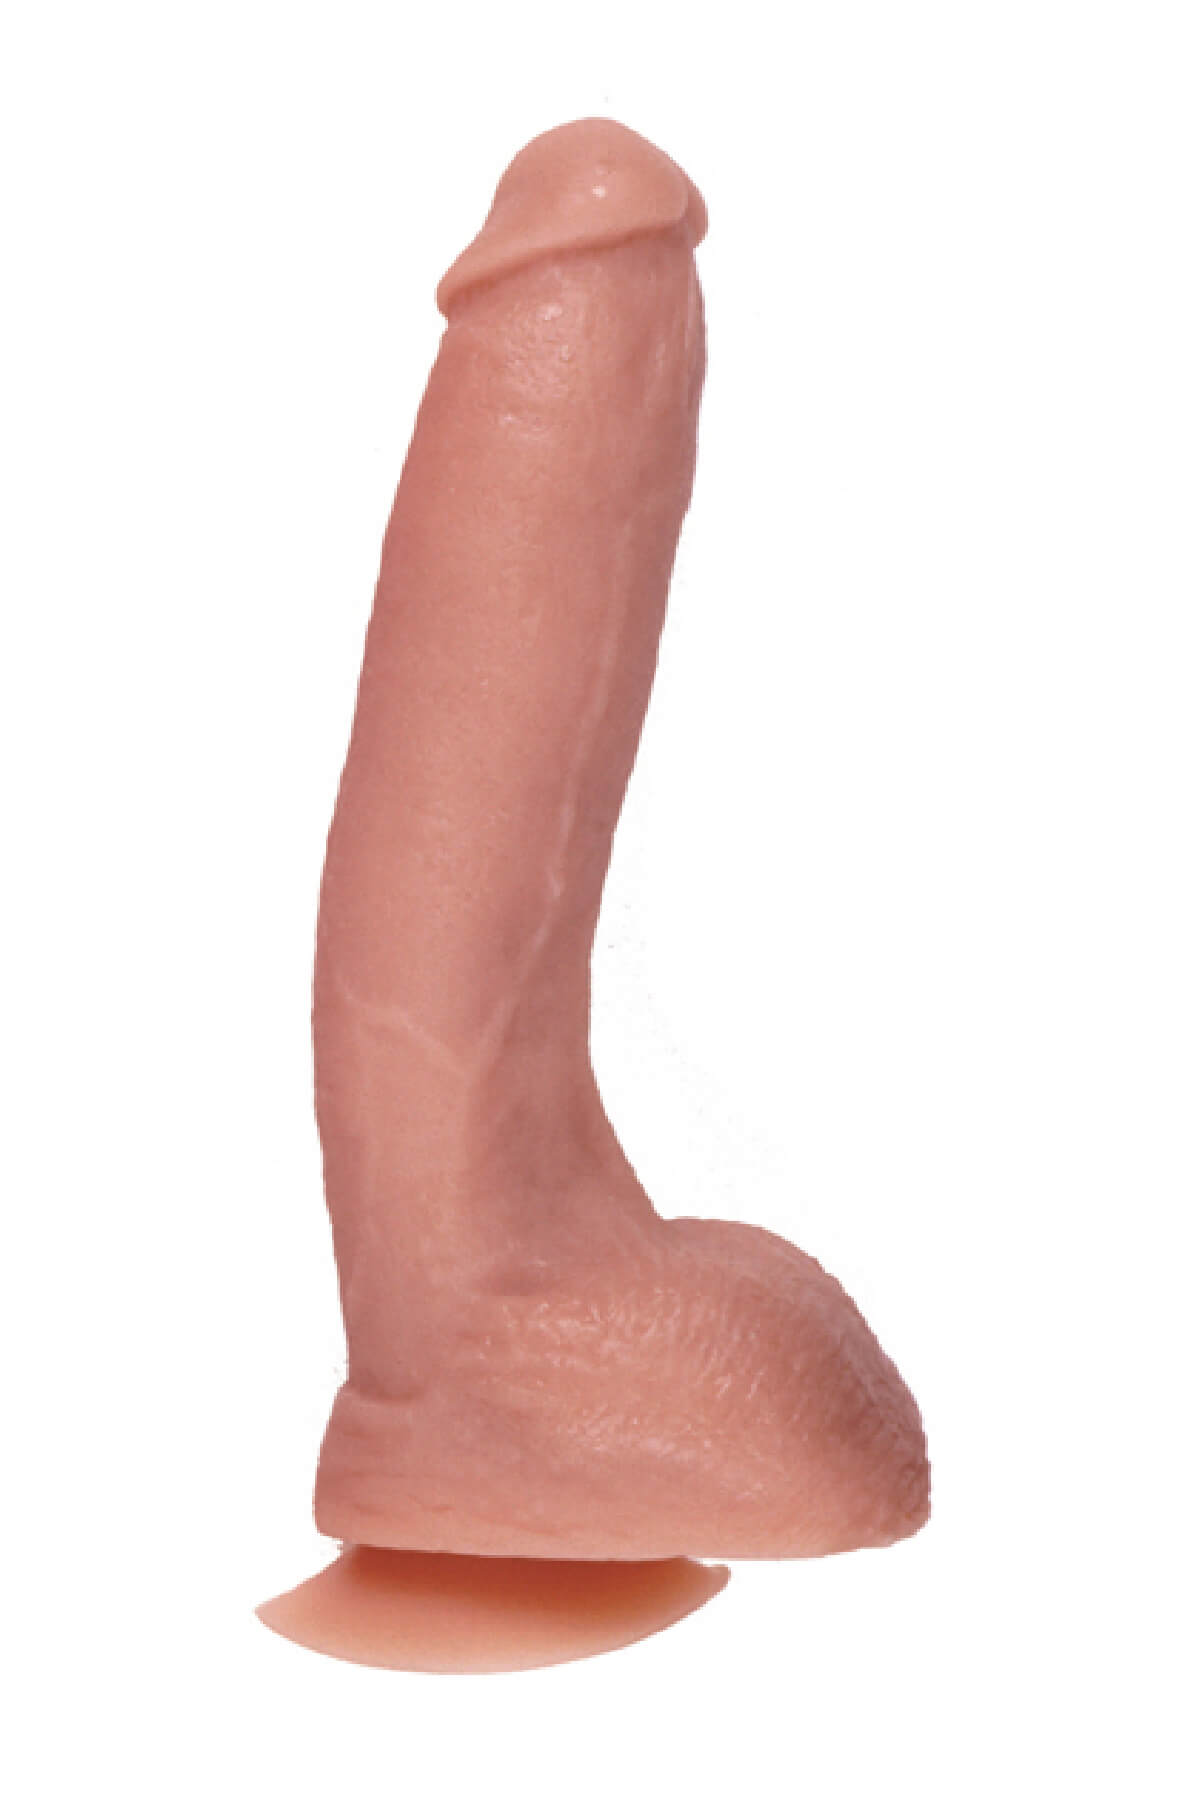 THE REAL ONE Penisdildo flesh 24cm